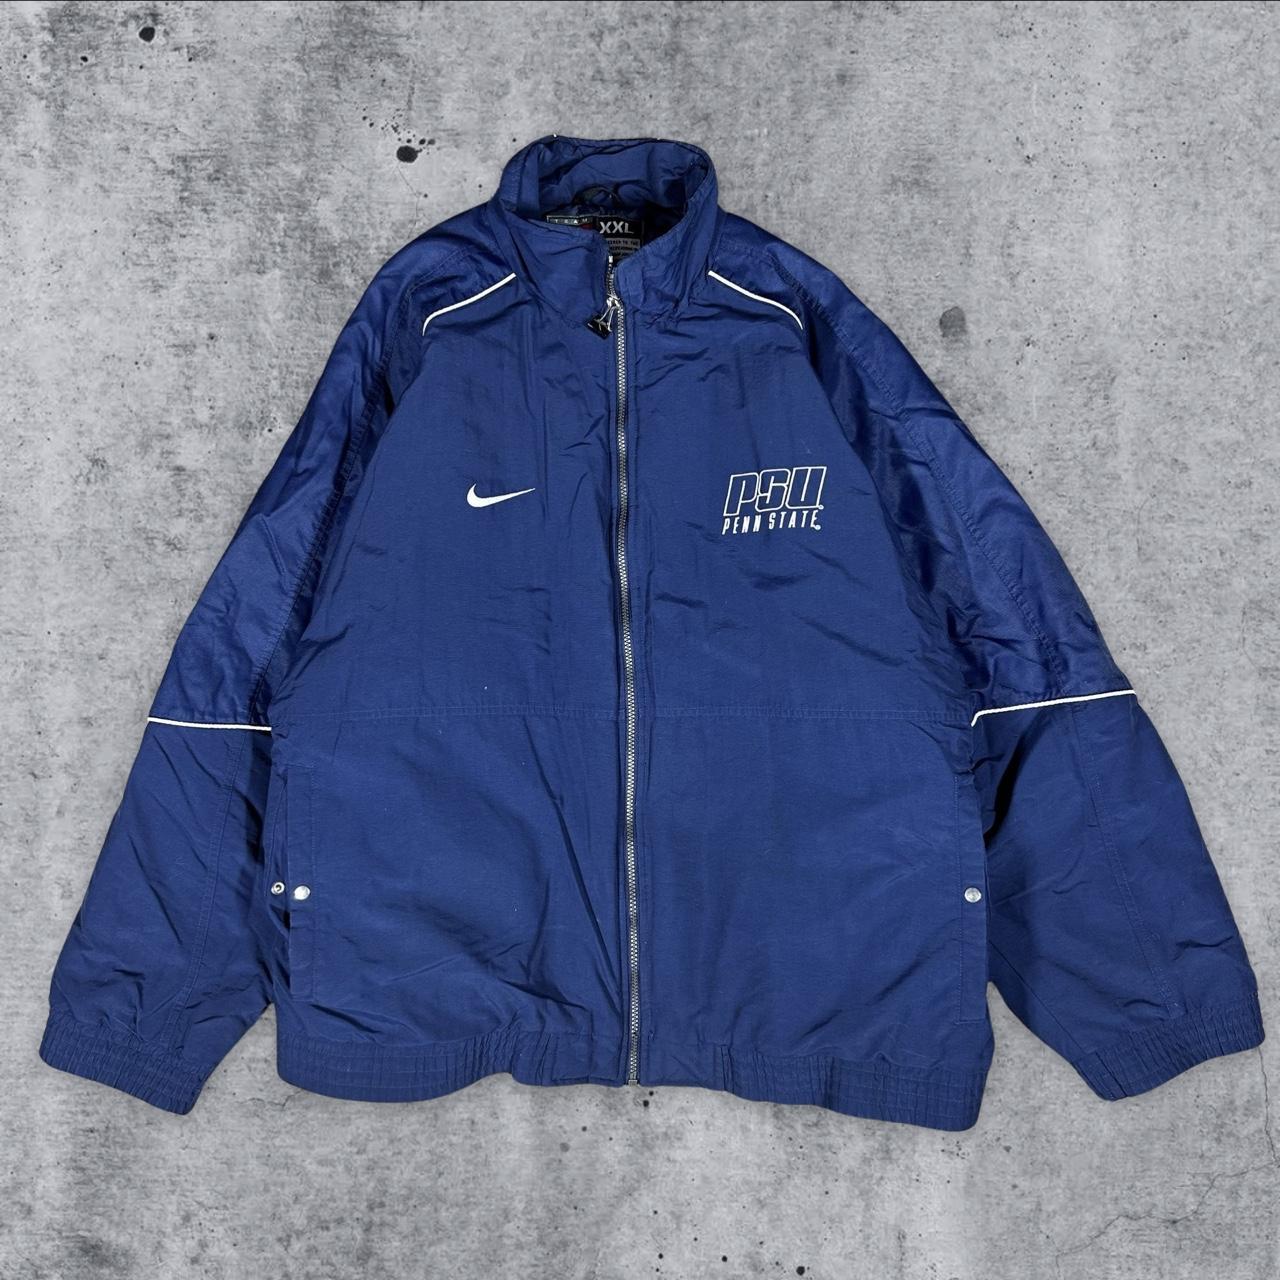 Nike Penn State Vintage Puffer Jacket Excellent... - Depop